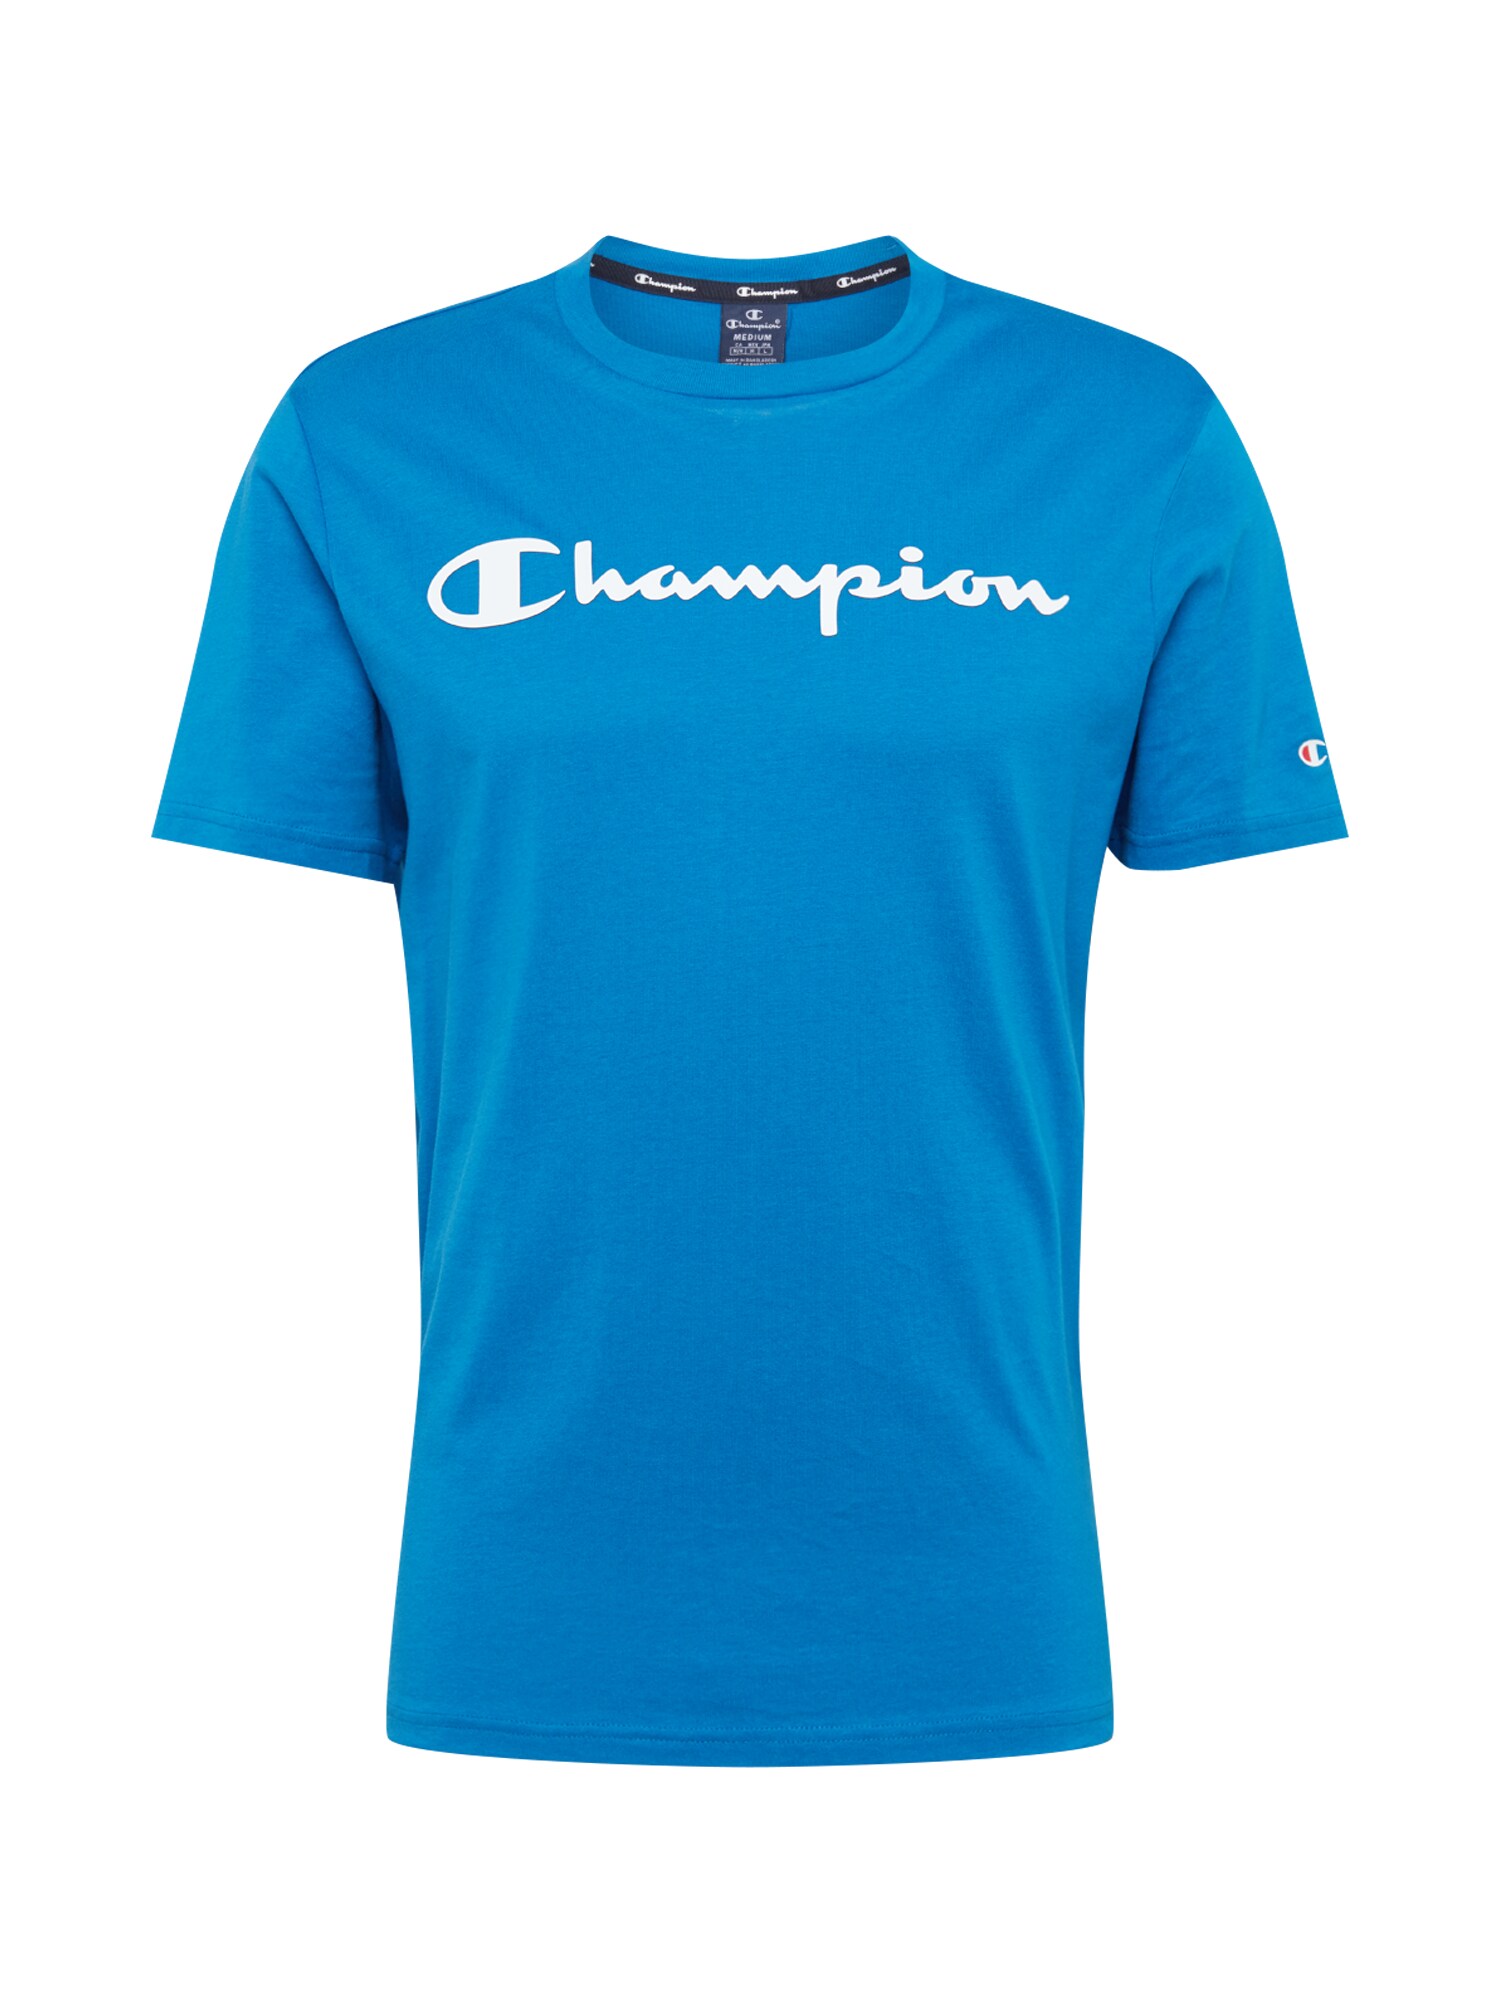 Champion Authentic Athletic Apparel Marškinėliai  dangaus žydra / balta